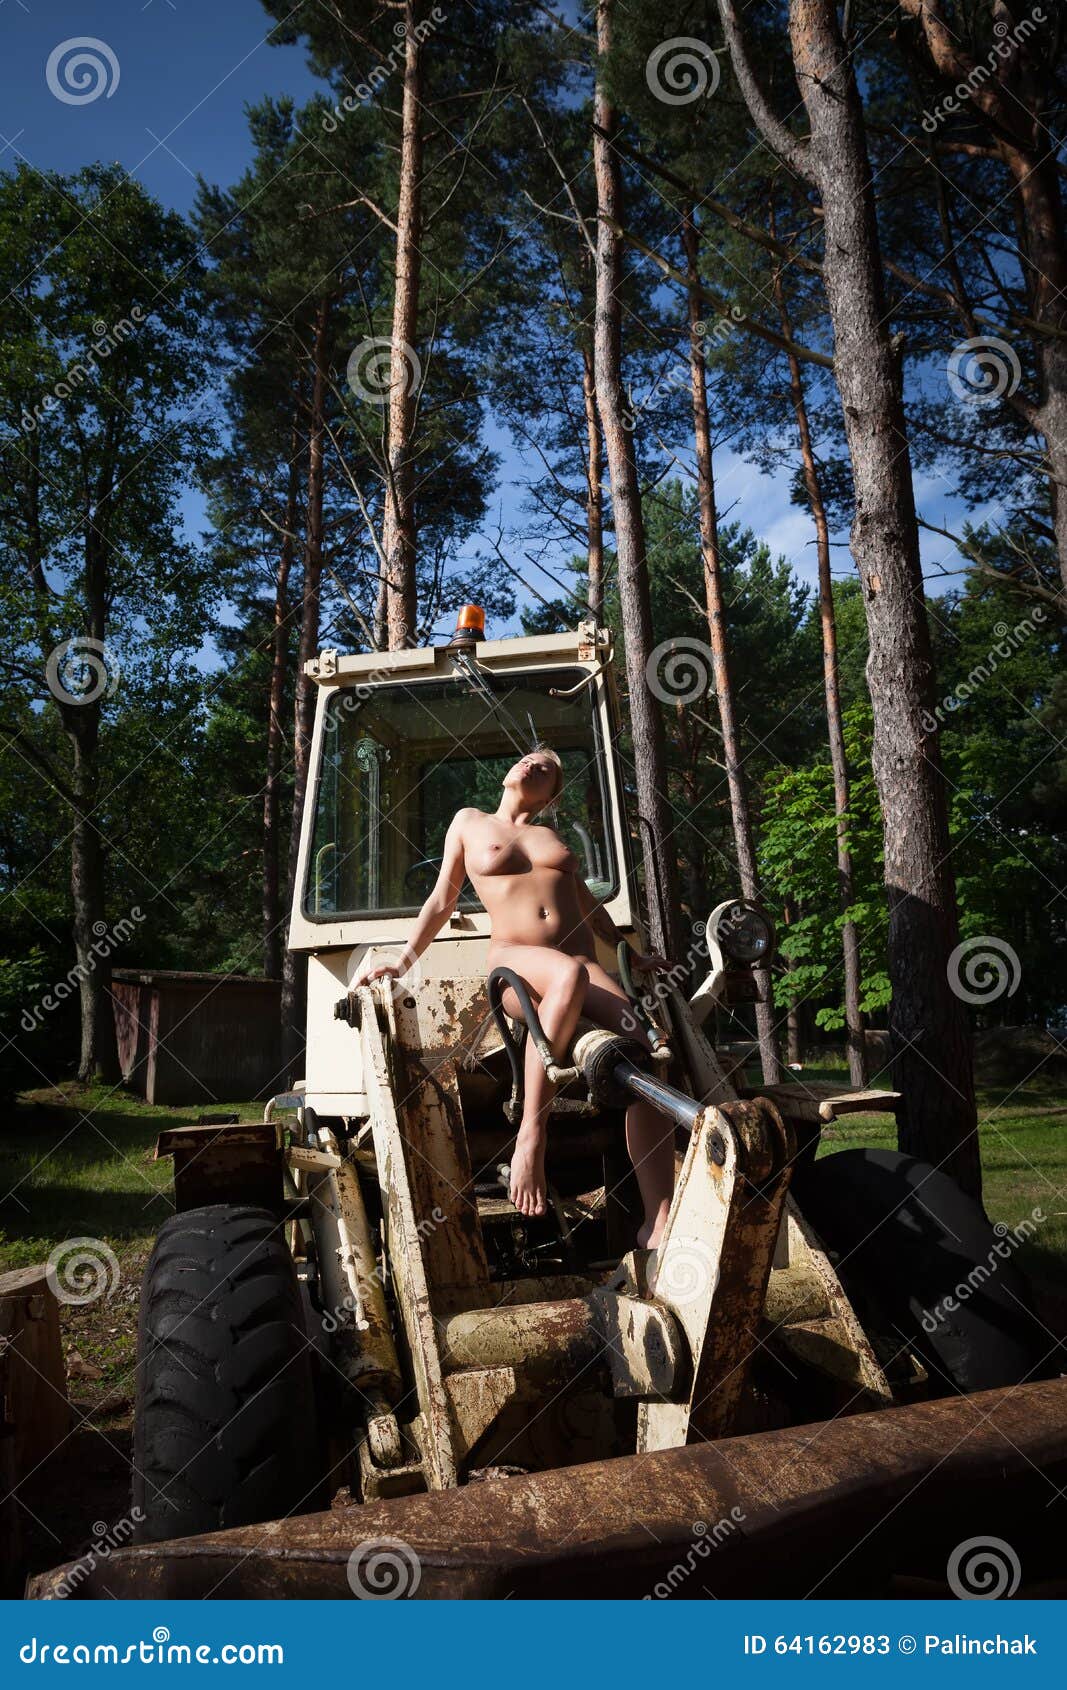 dipankar chowdhury share naked on a tractor photos